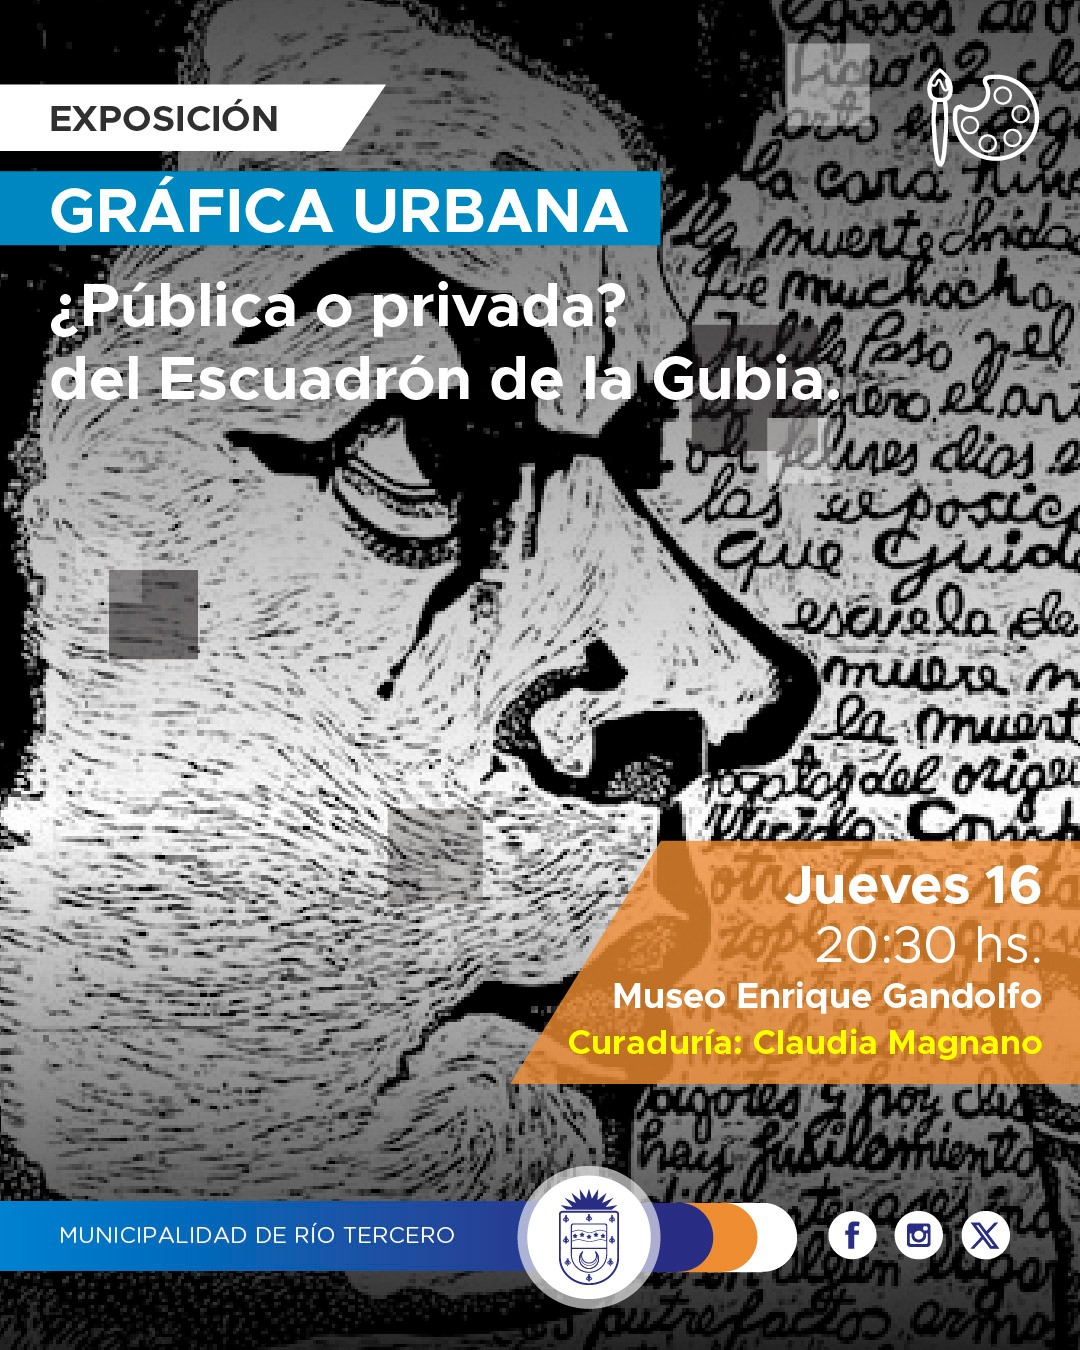 Este jueves habrá arte urbano en el Museo Enrique Gandolfo 